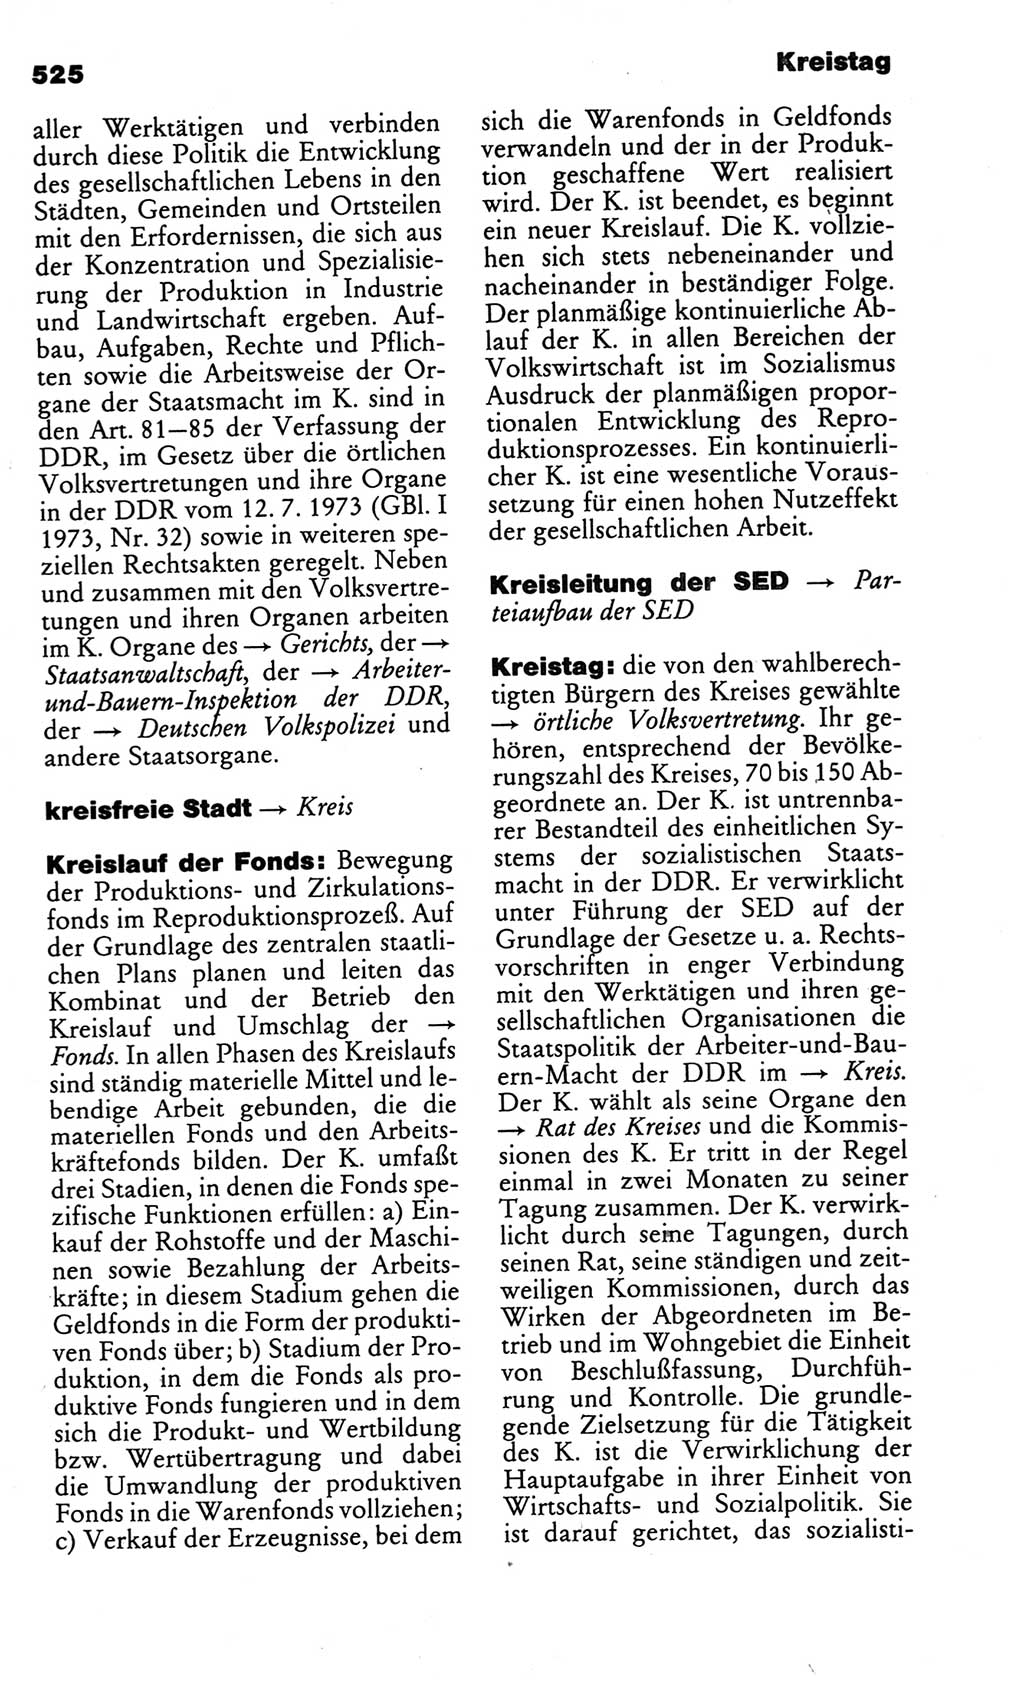 Kleines politisches Wörterbuch [Deutsche Demokratische Republik (DDR)] 1986, Seite 525 (Kl. pol. Wb. DDR 1986, S. 525)